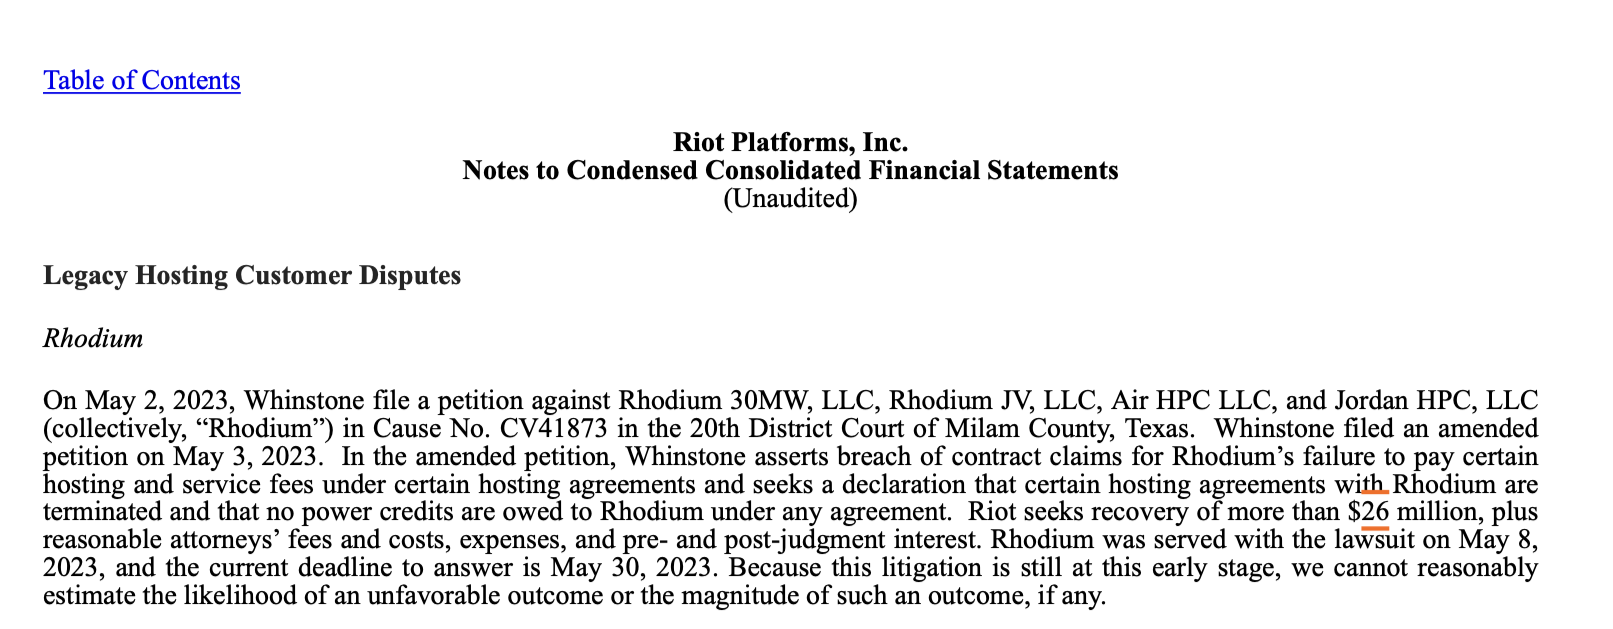 Майнеру BTC Rhodium грозит судебный иск из-за предполагаемых невыплаченных комиссий в размере 26 миллионов долларов: отчет